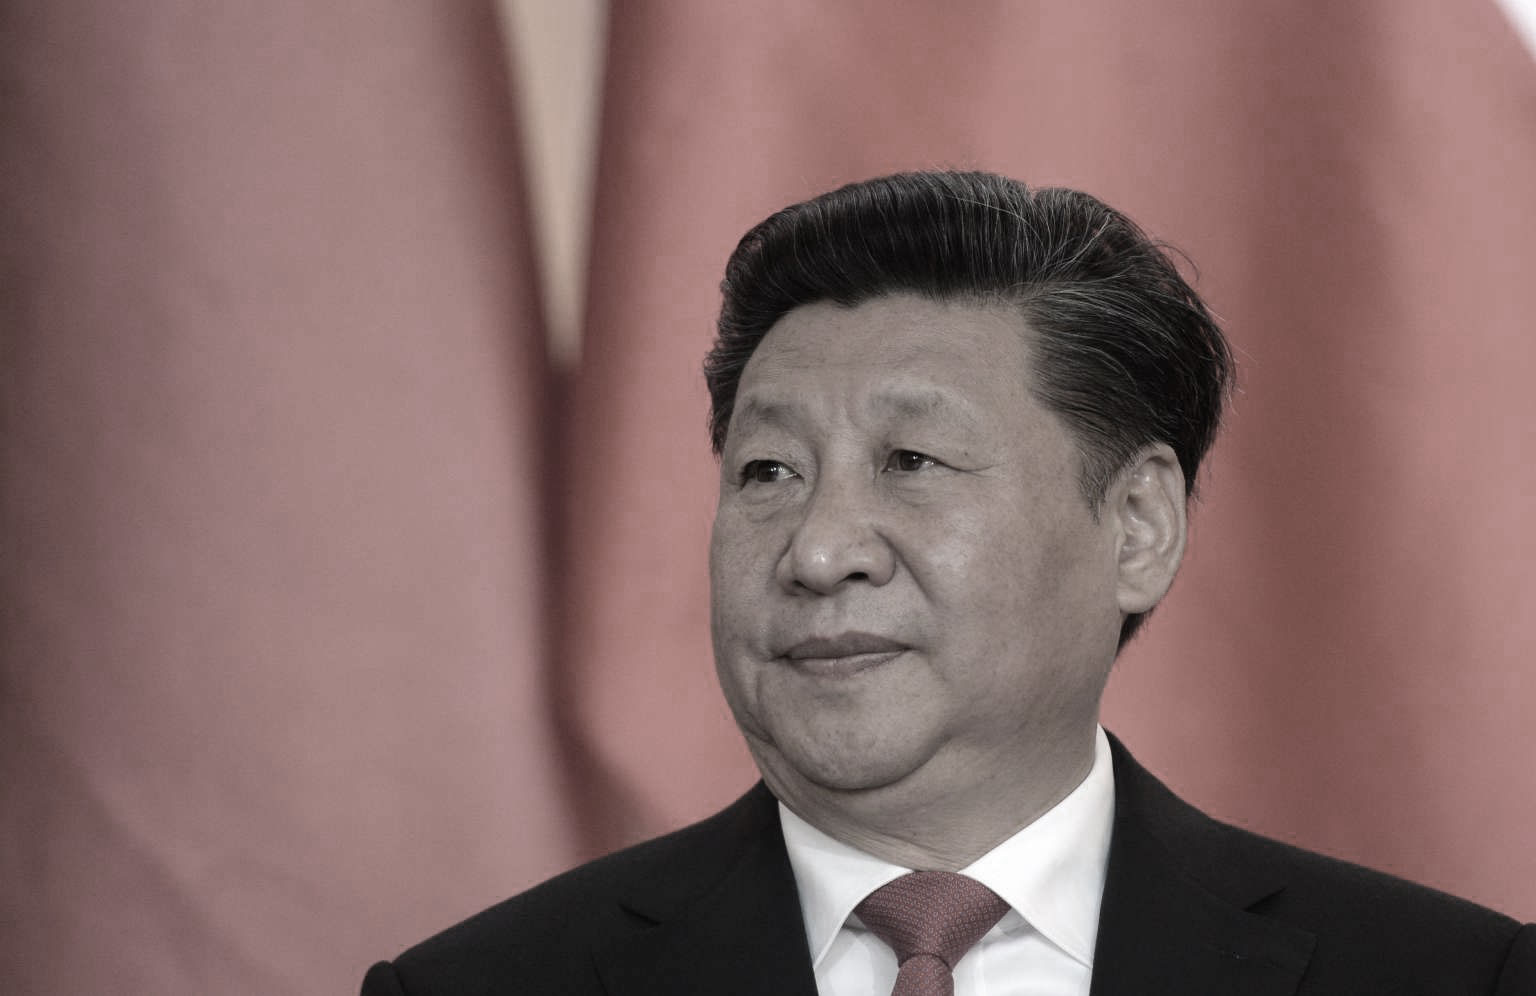 El régimen chino "puso en peligro a otros países" con el virus PCCh confirman servicios de inteligencia